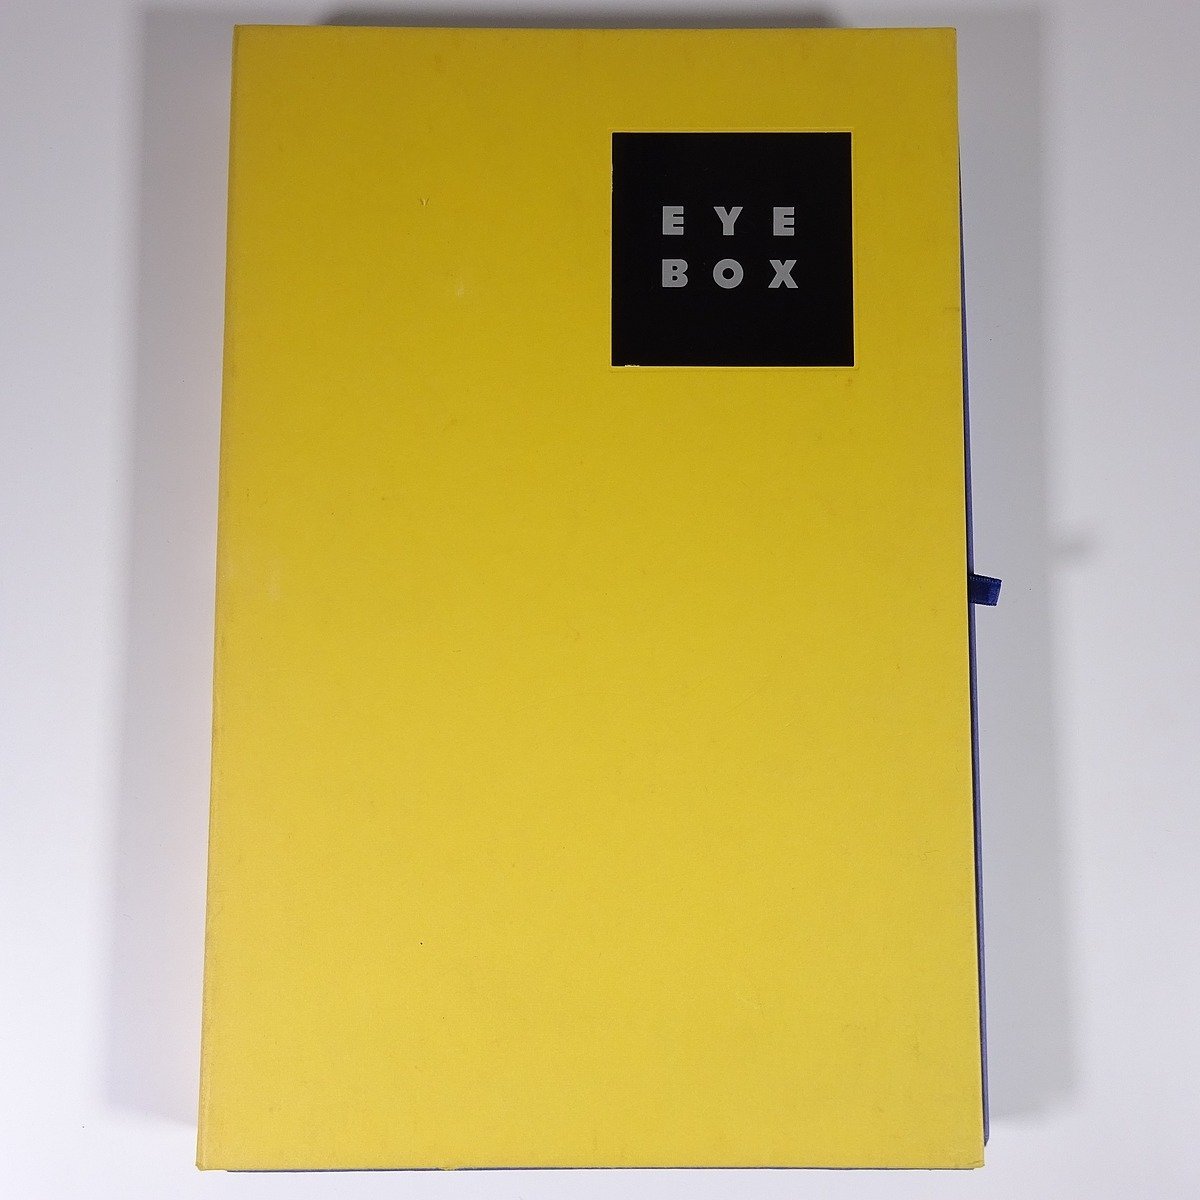 EYE BOX Drucken und visuelle Informationen im 21. Jahrhundert Comtex Co., Ltd. 1992 Großformatiges Buch in einer Box Bildverarbeitung Visuelle Effekte, usw., Kunst, Unterhaltung, Malerei, Kommentar, Rezension